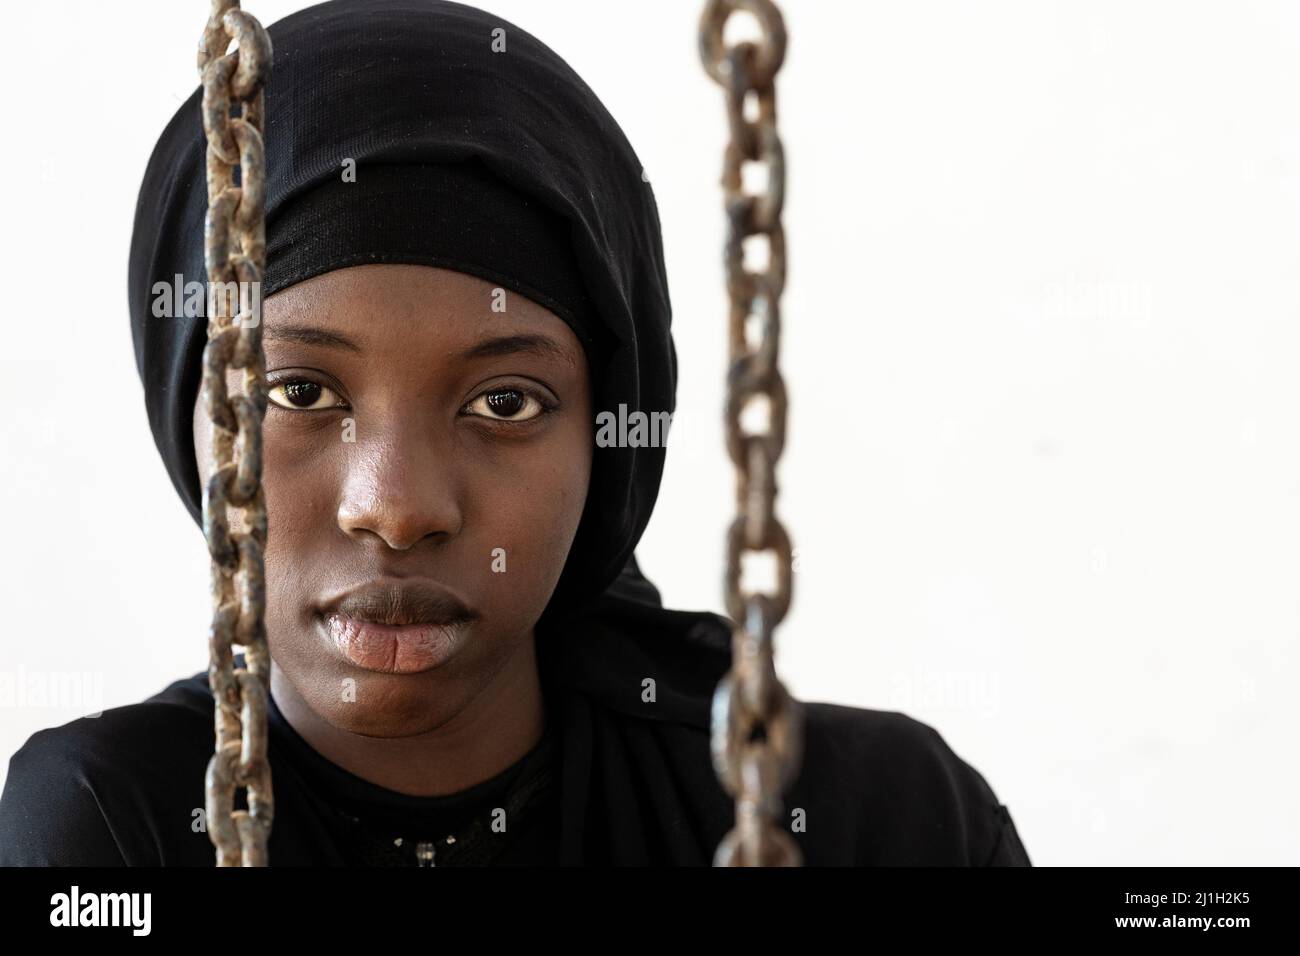 Découragé Sad African Young Girl préoccupée par son destin.mariage forcé, droits refusés et traite des êtres humains questions. Banque D'Images